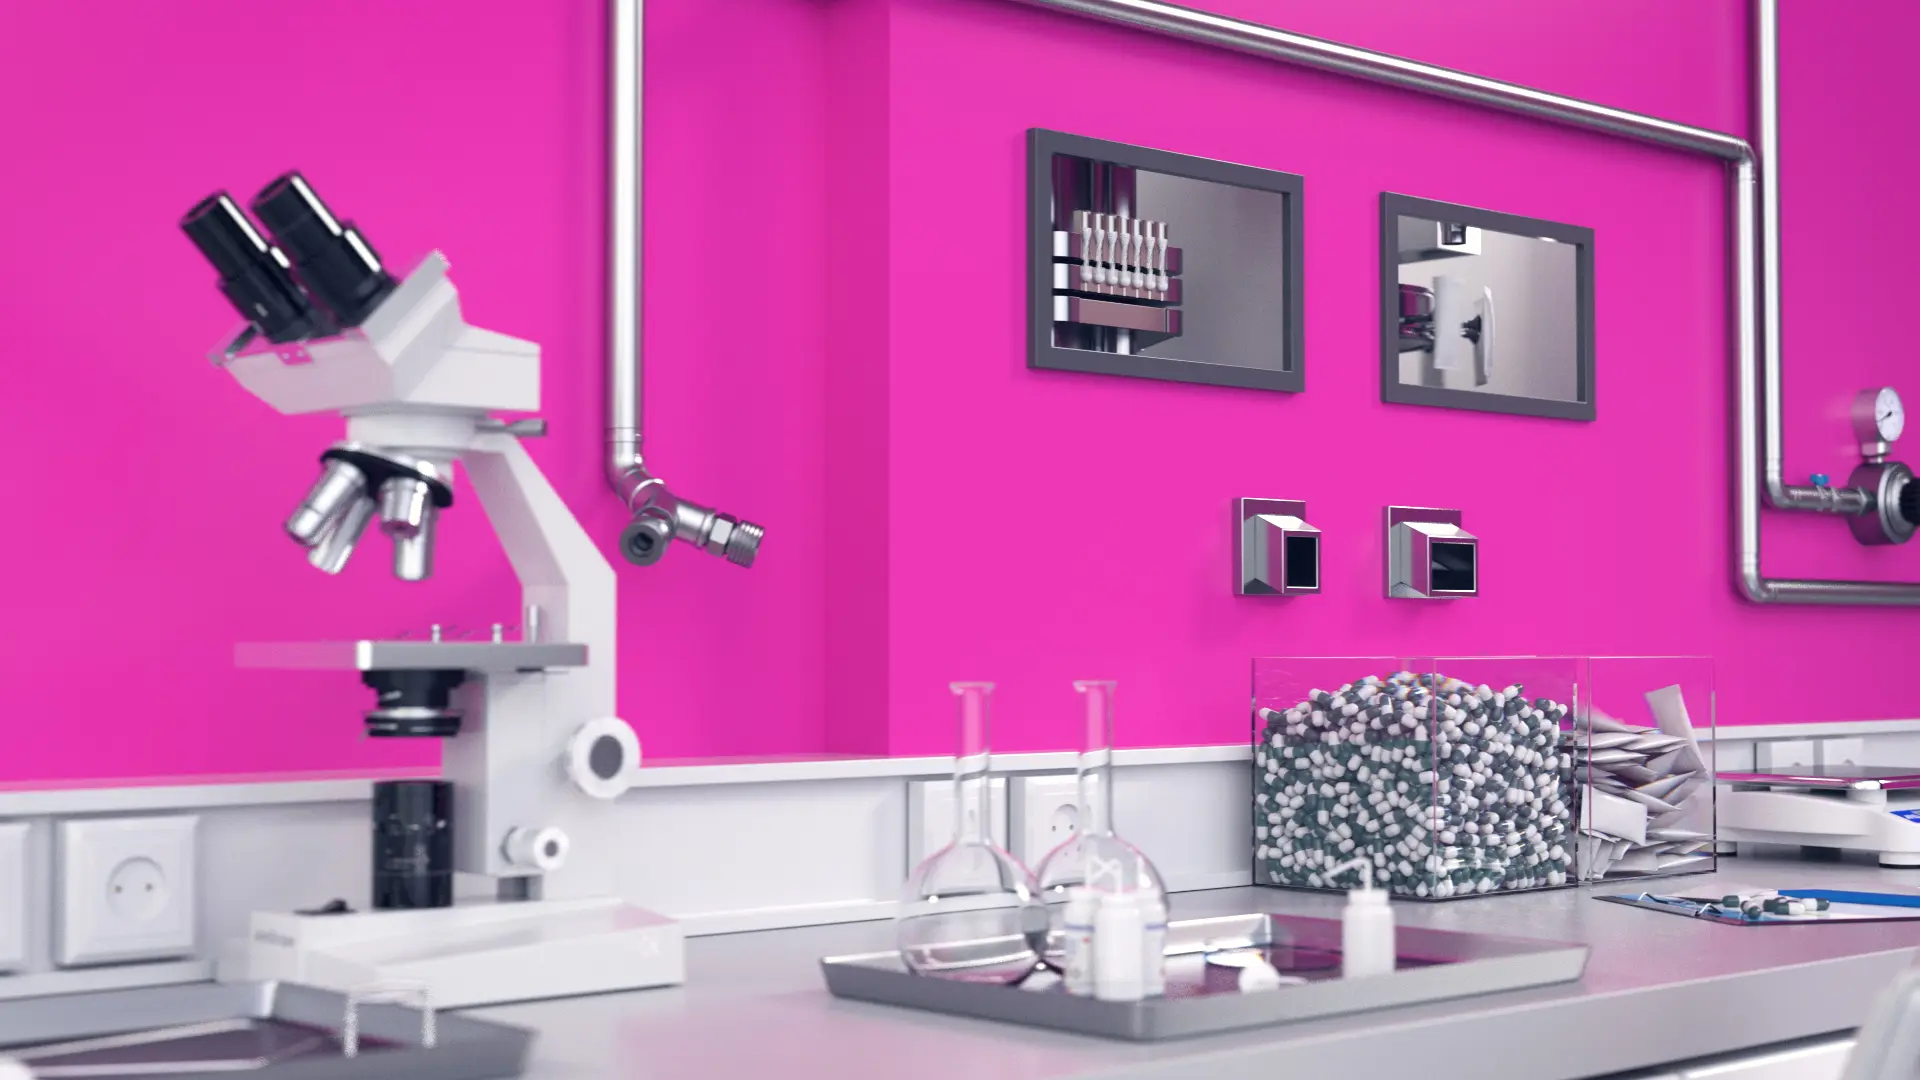 Mikroskop und Laborutensilien in einem modernen Labor mit pinker Wand als Hintergrund.